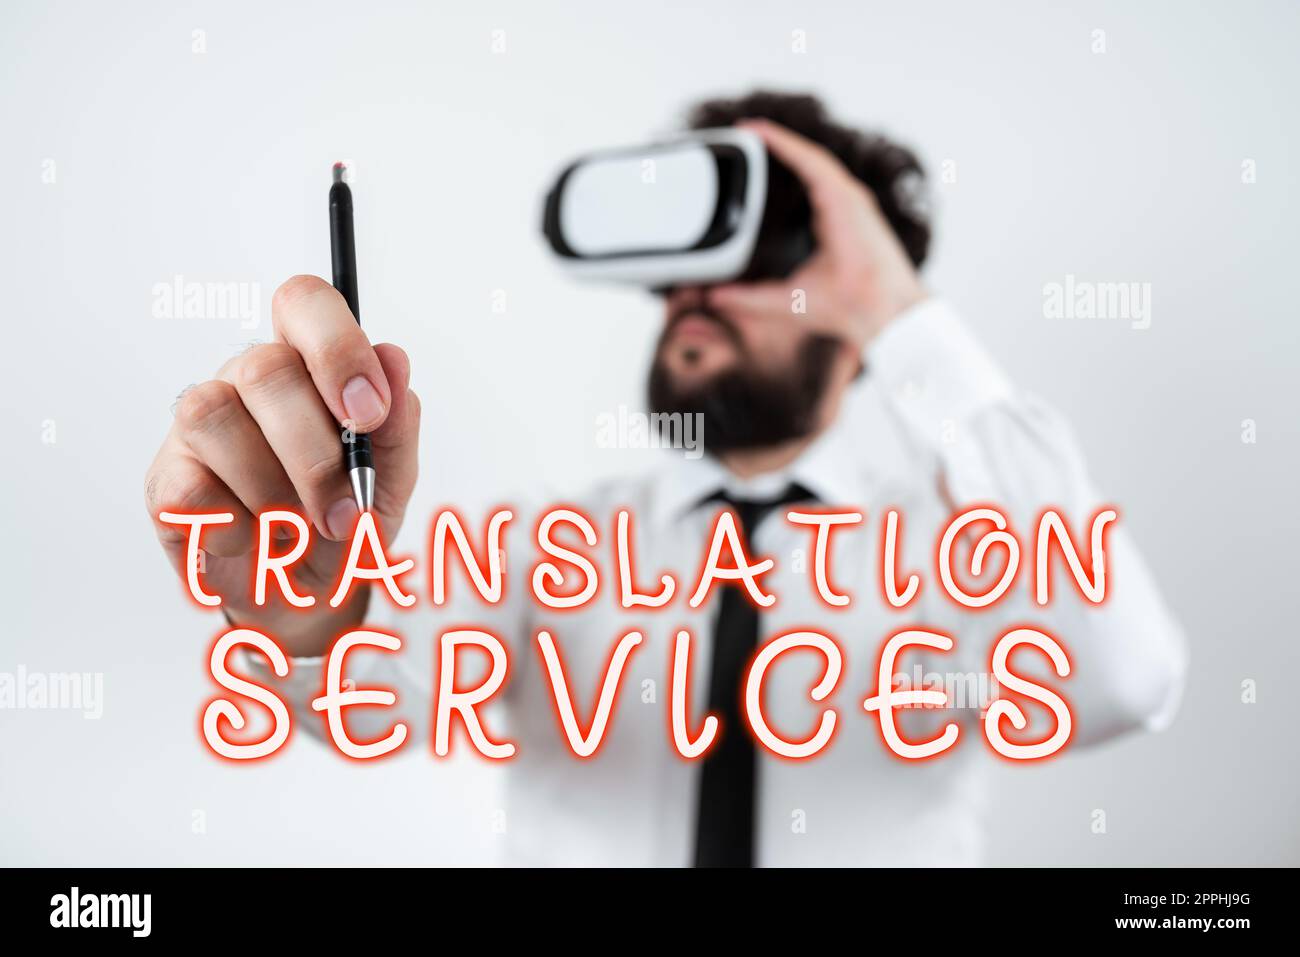 Text mit Inspiration Translation Services. Business-Showcase-Organisation, die Menschen die Möglichkeit gibt, Sprache zu übersetzen Stockfoto